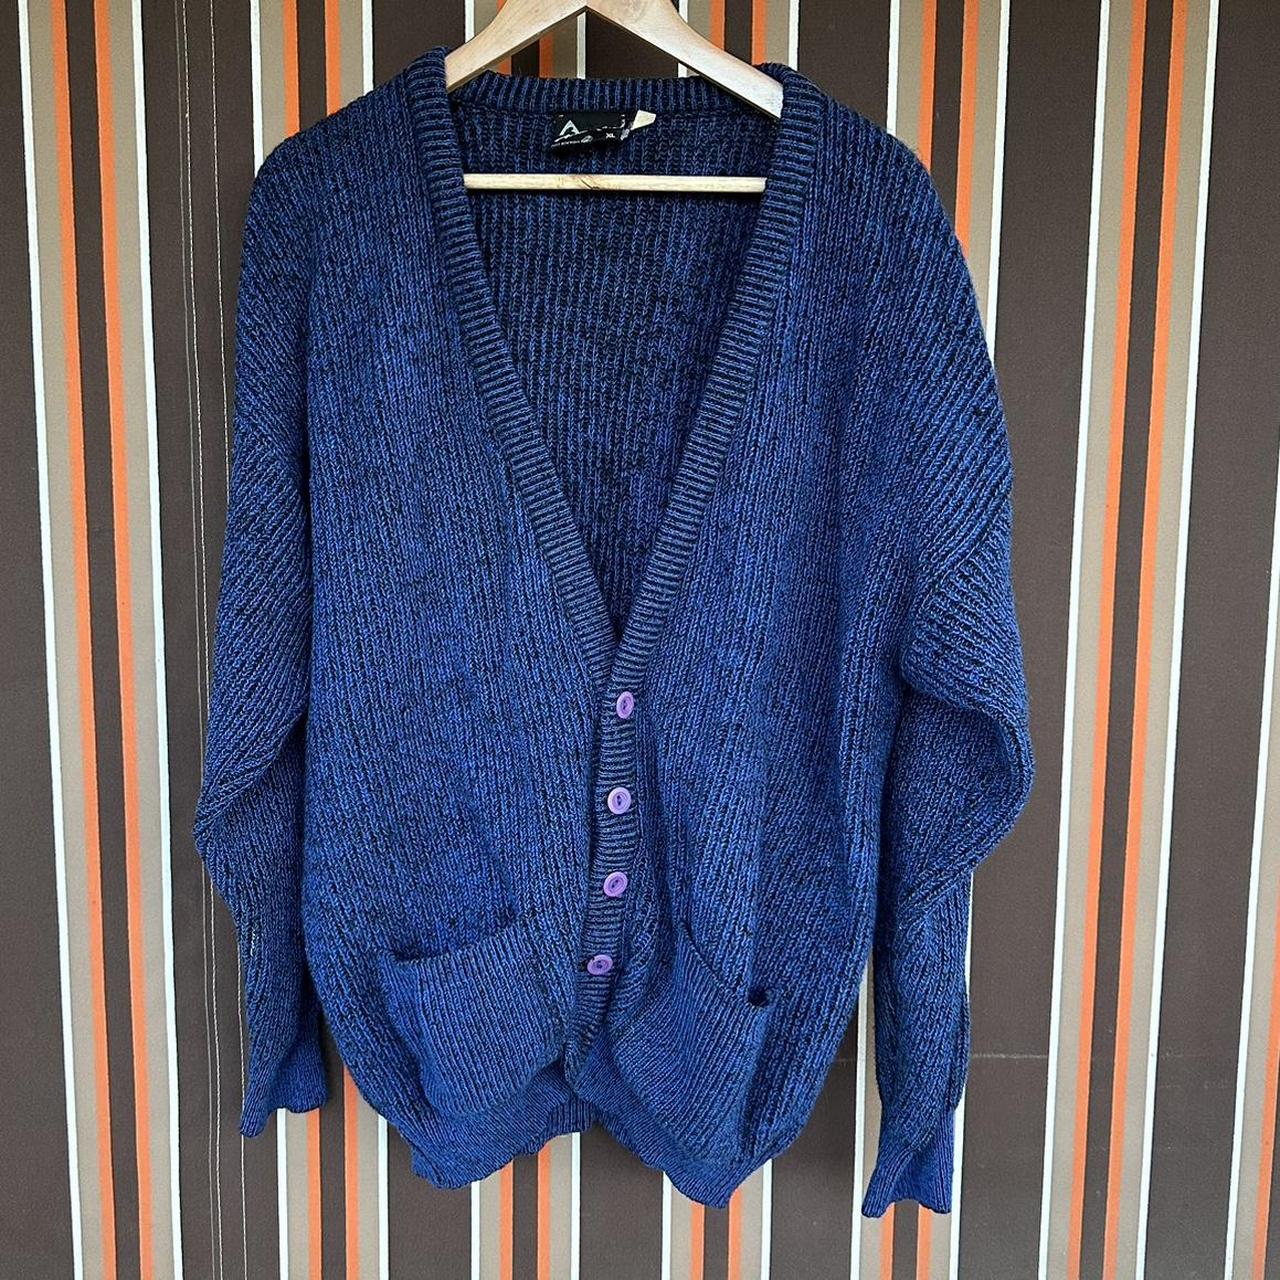 Vintage 80s blue wool men's cardigan with purple... - Depop